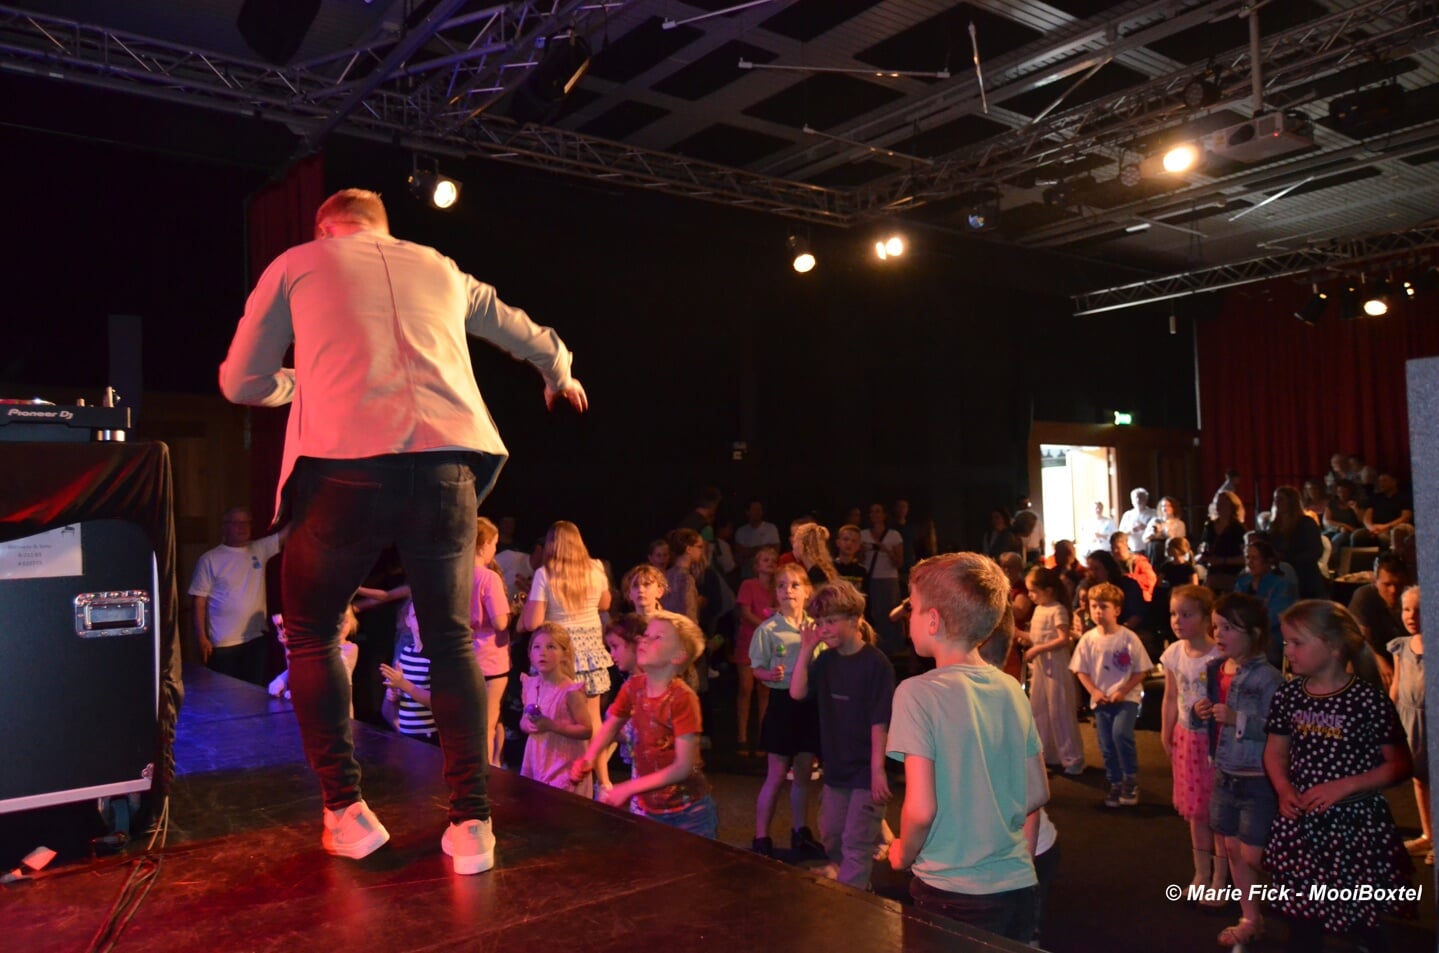 De jeugd vermaakte zich zaterdag opperbest tijdens het kindermuziekfestival in Podium Boxtel. Naast het uitproberen van verschillende instrumenten, was er ook dans en een optreden van de bekende TikTokker Jeffrey Parmentier.